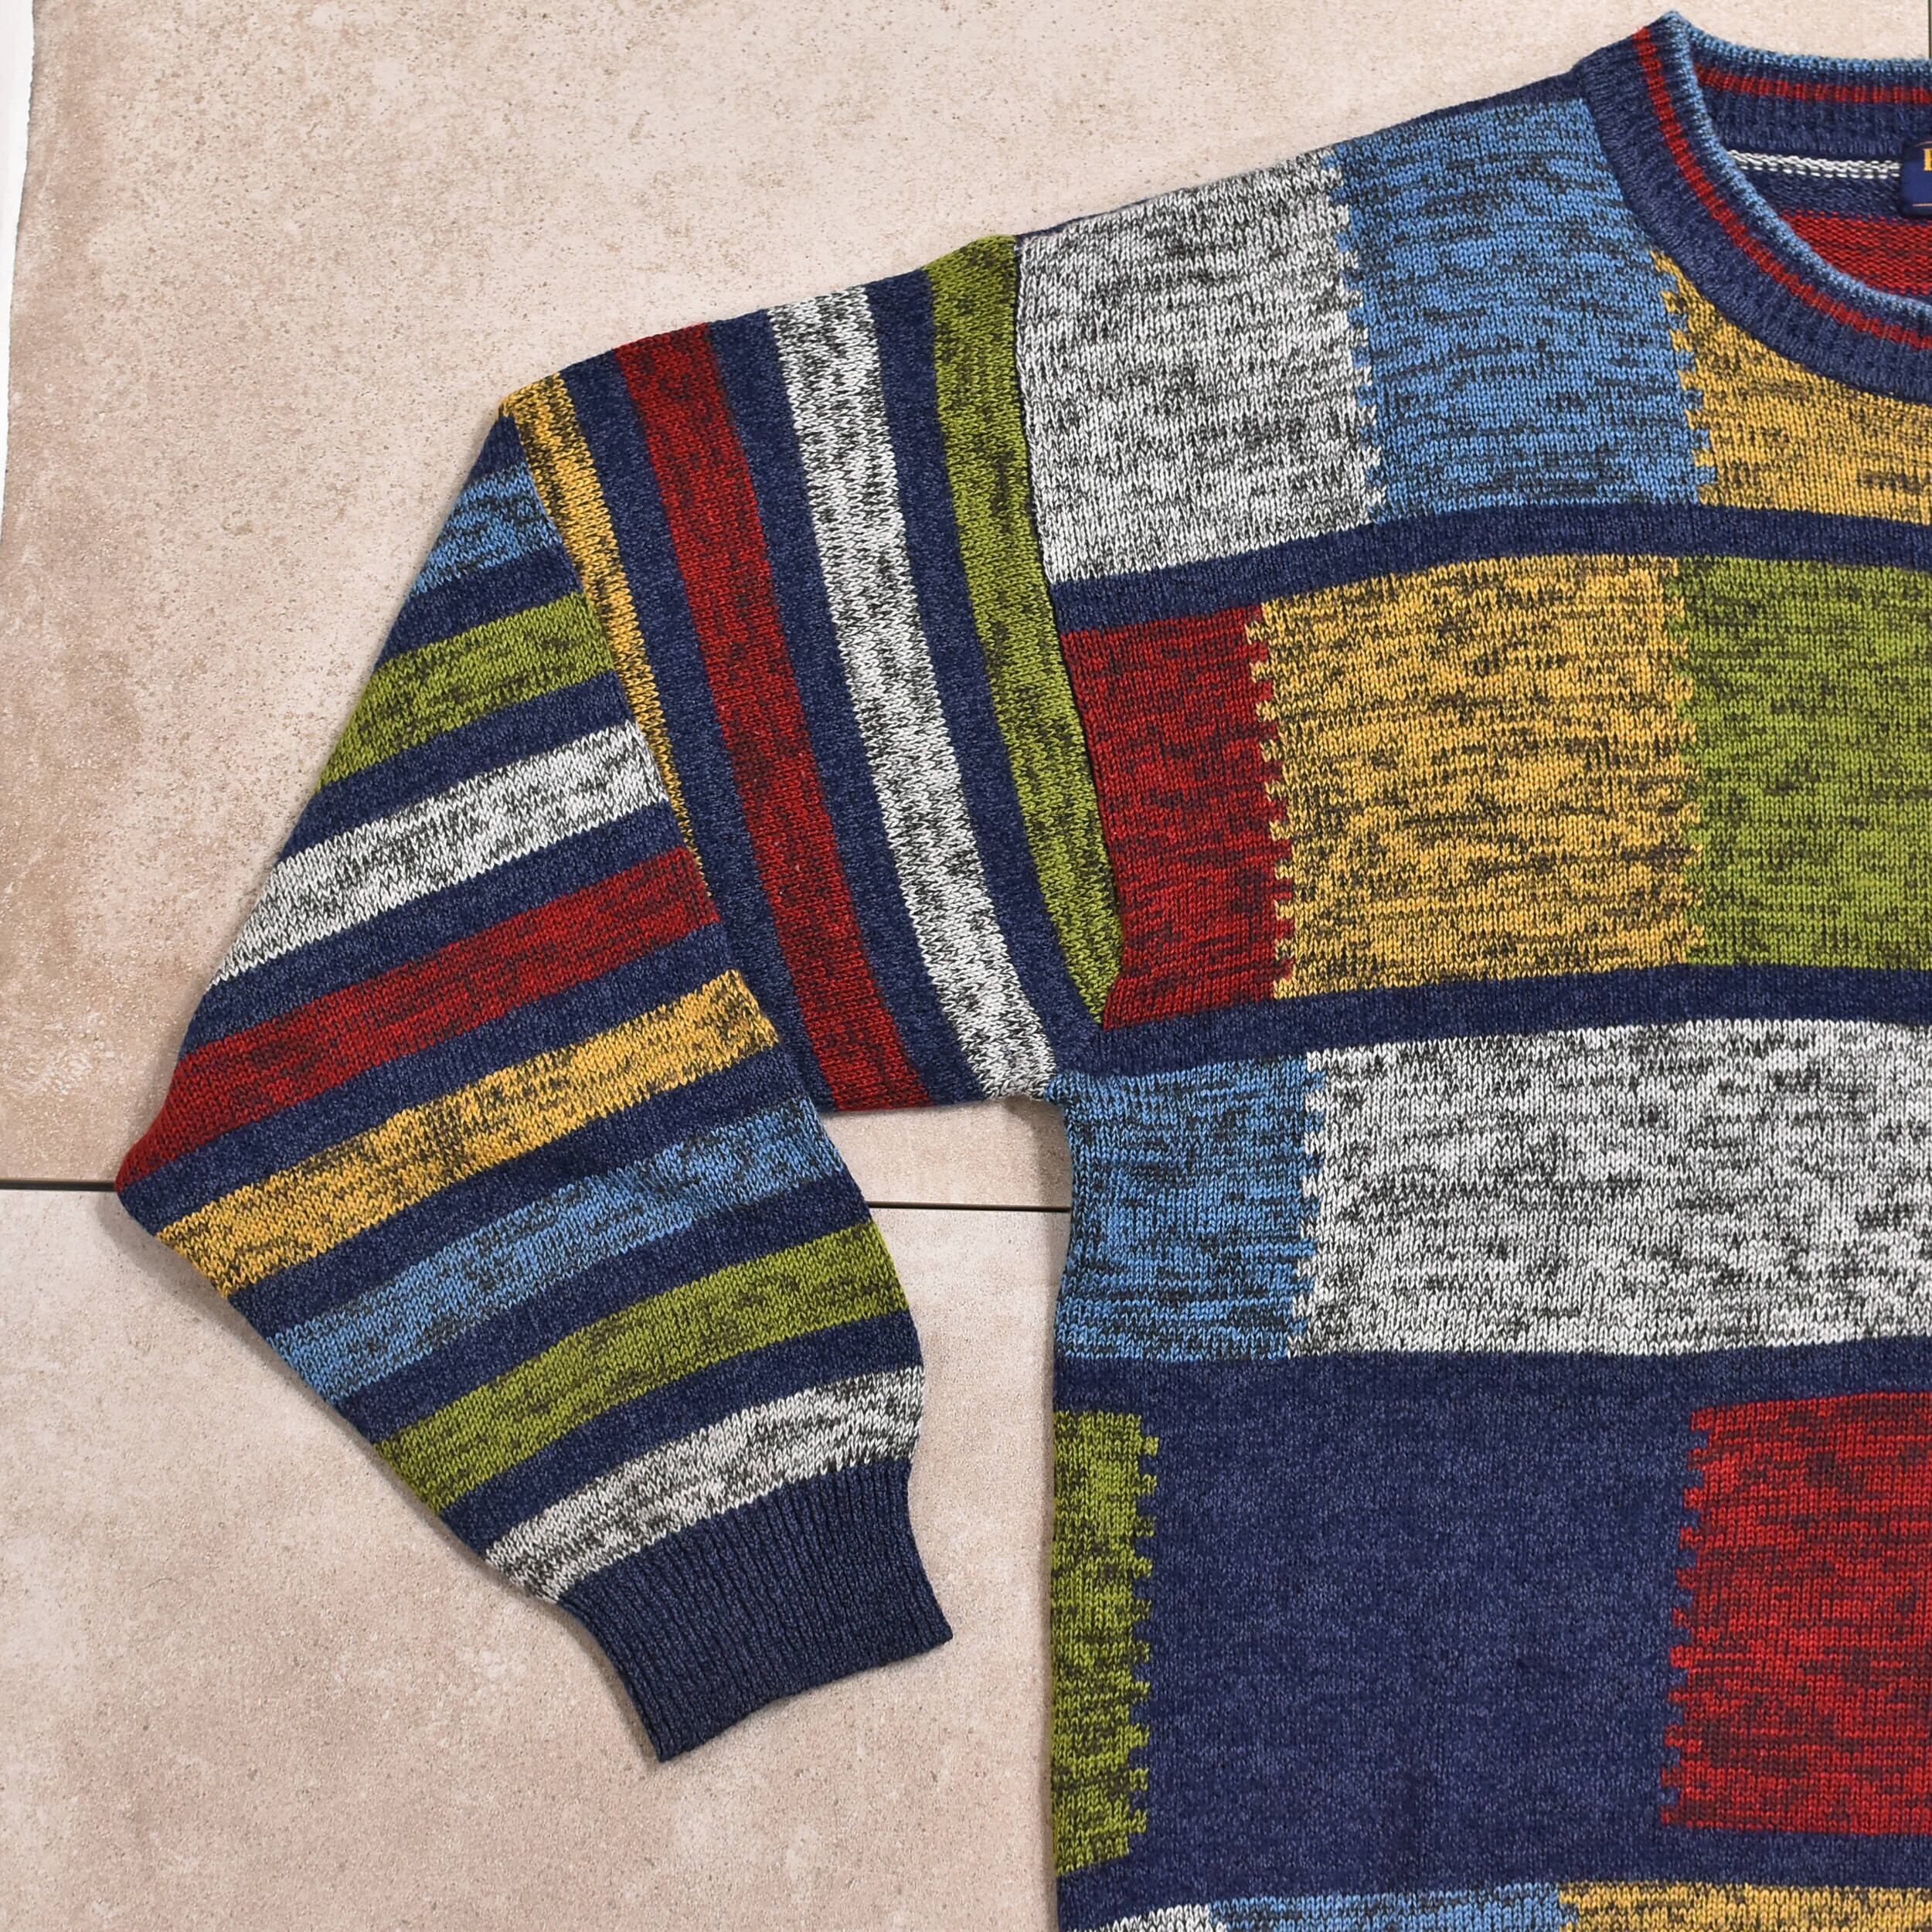 90's/waffle pattern cotton sweater